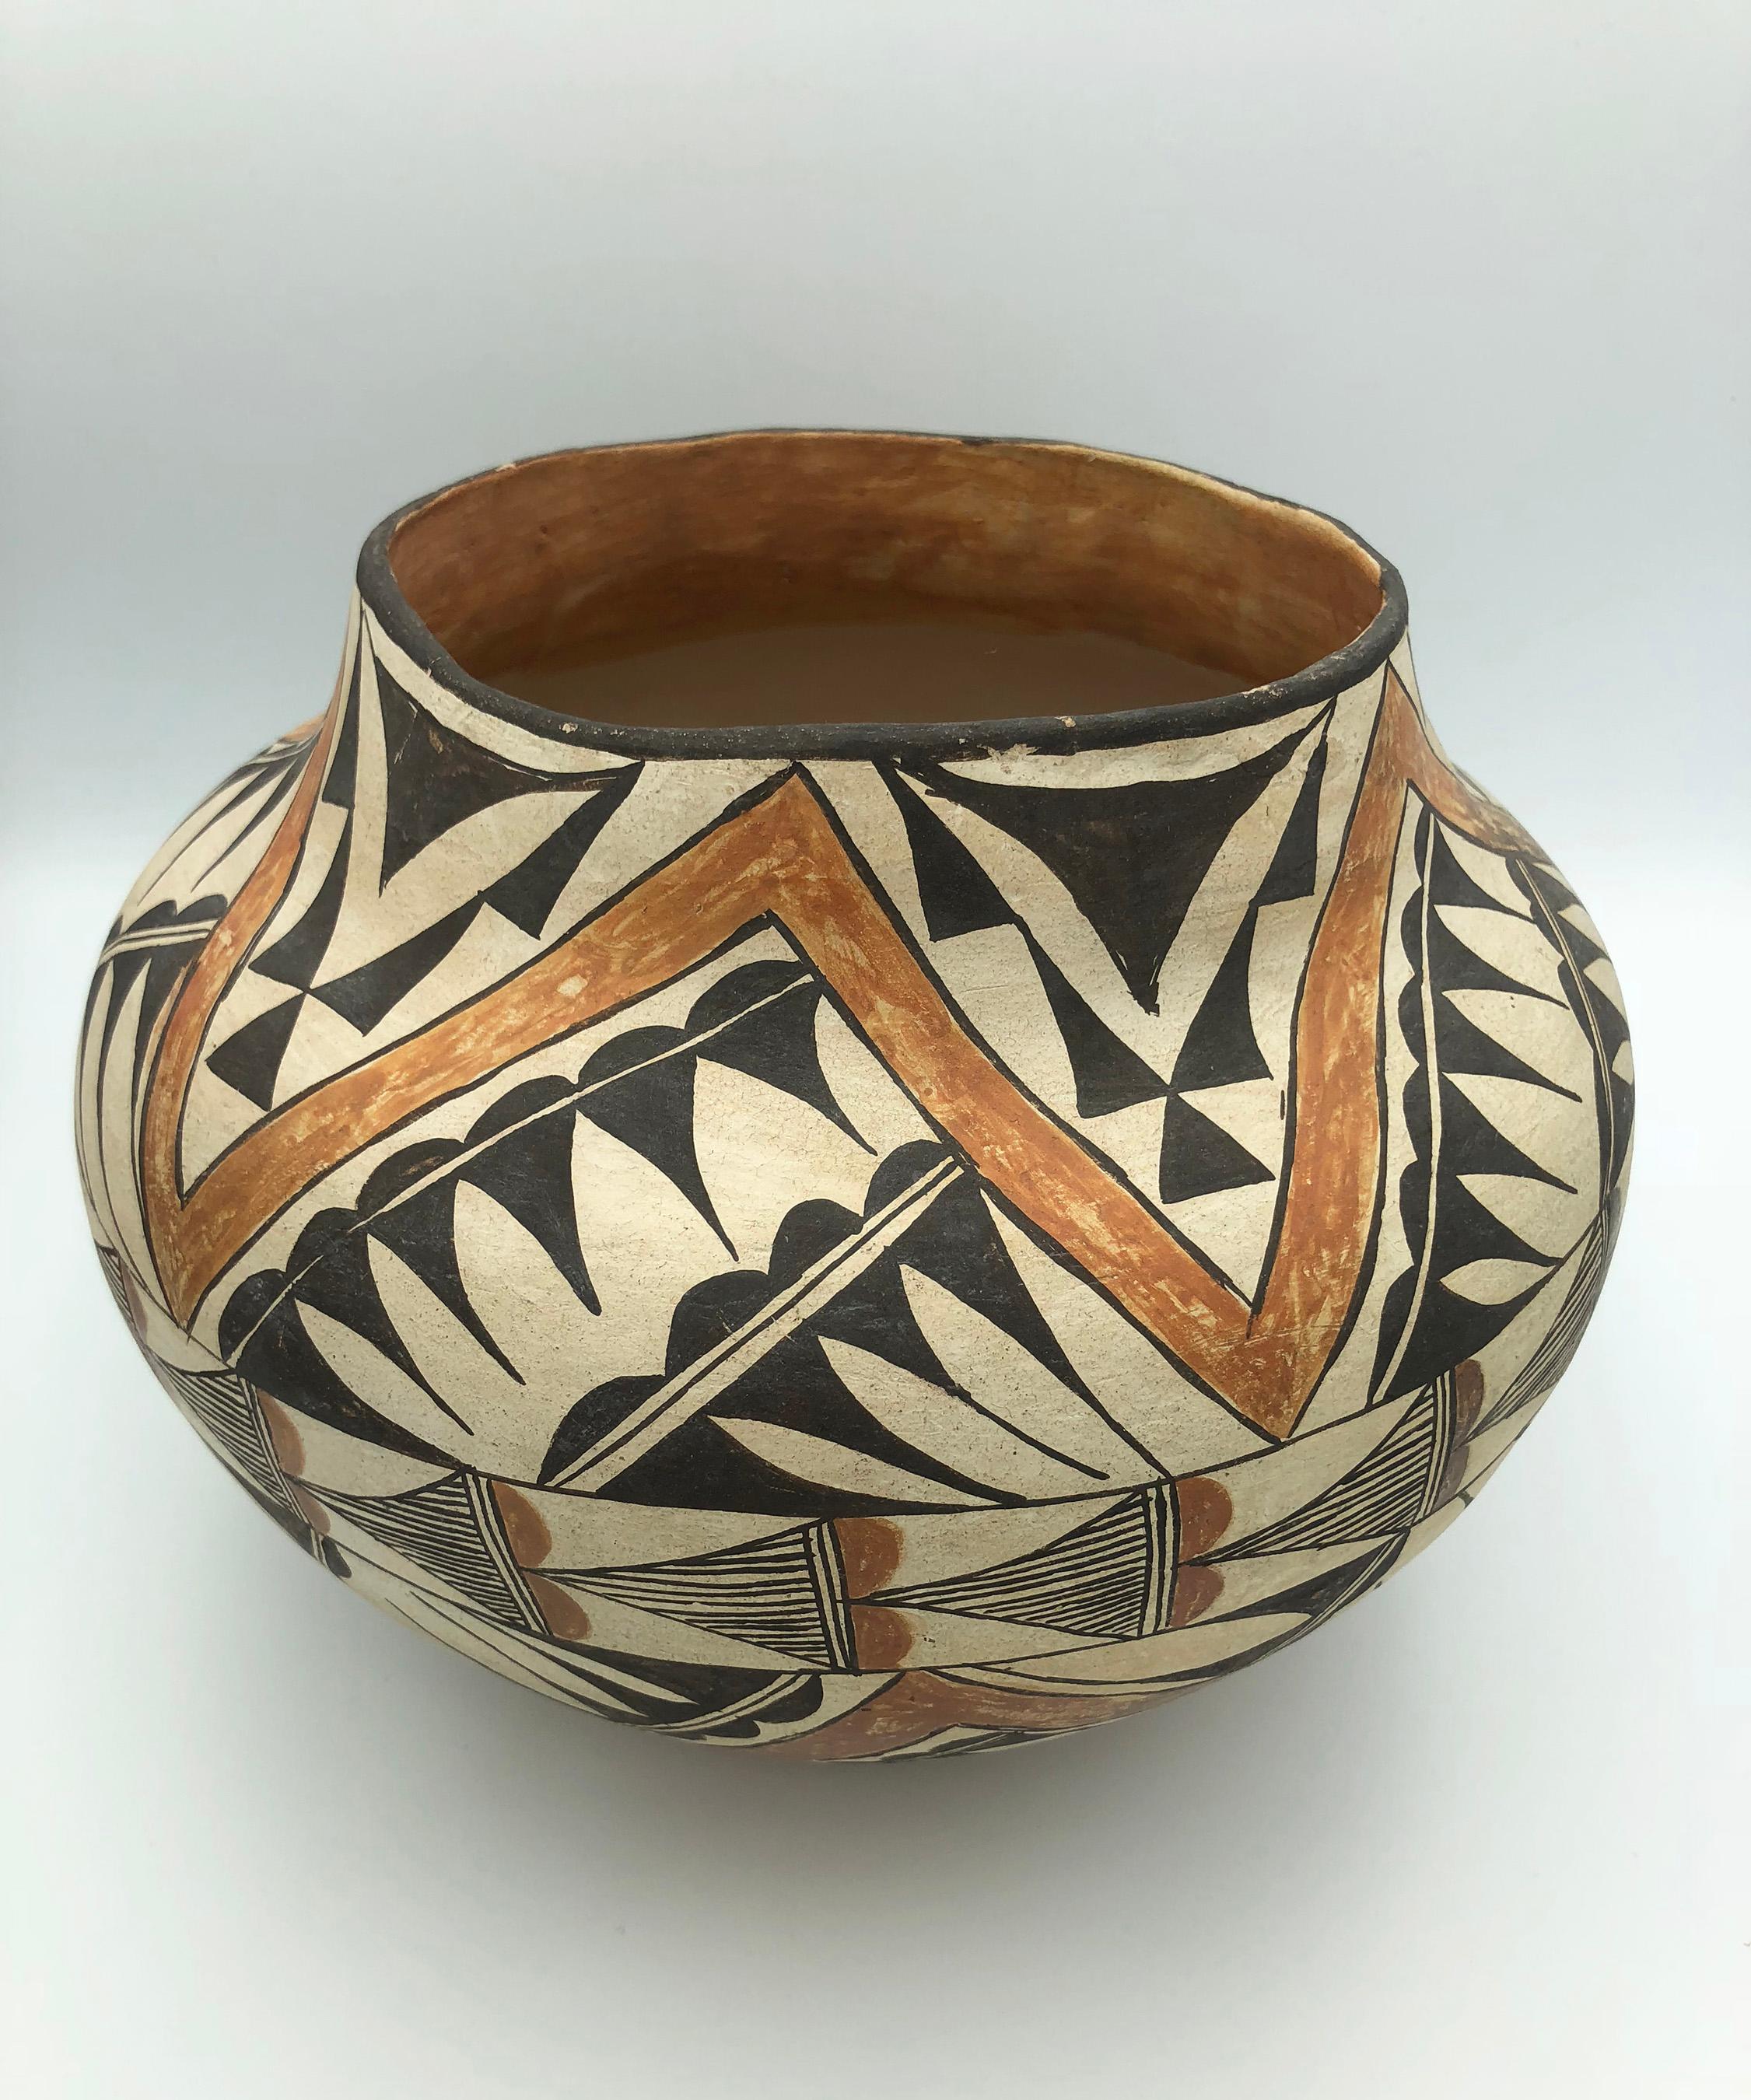 acoma pottery value